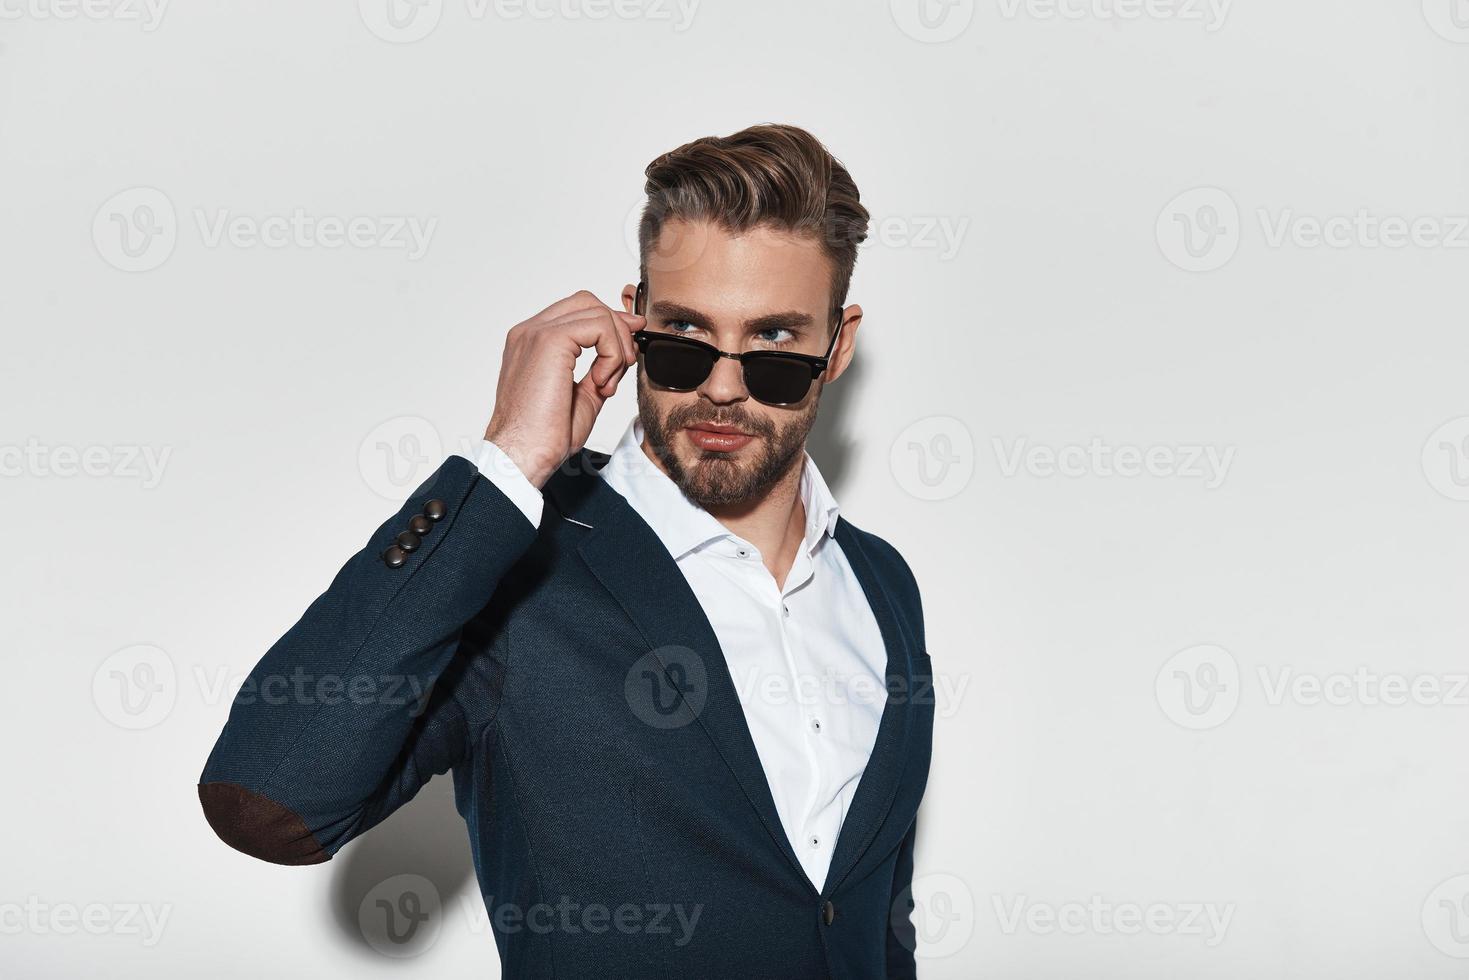 sintiéndose confiado en su estilo. un joven apuesto con ropa formal ajustando sus gafas y mirando hacia otro lado mientras se enfrenta a un fondo gris foto